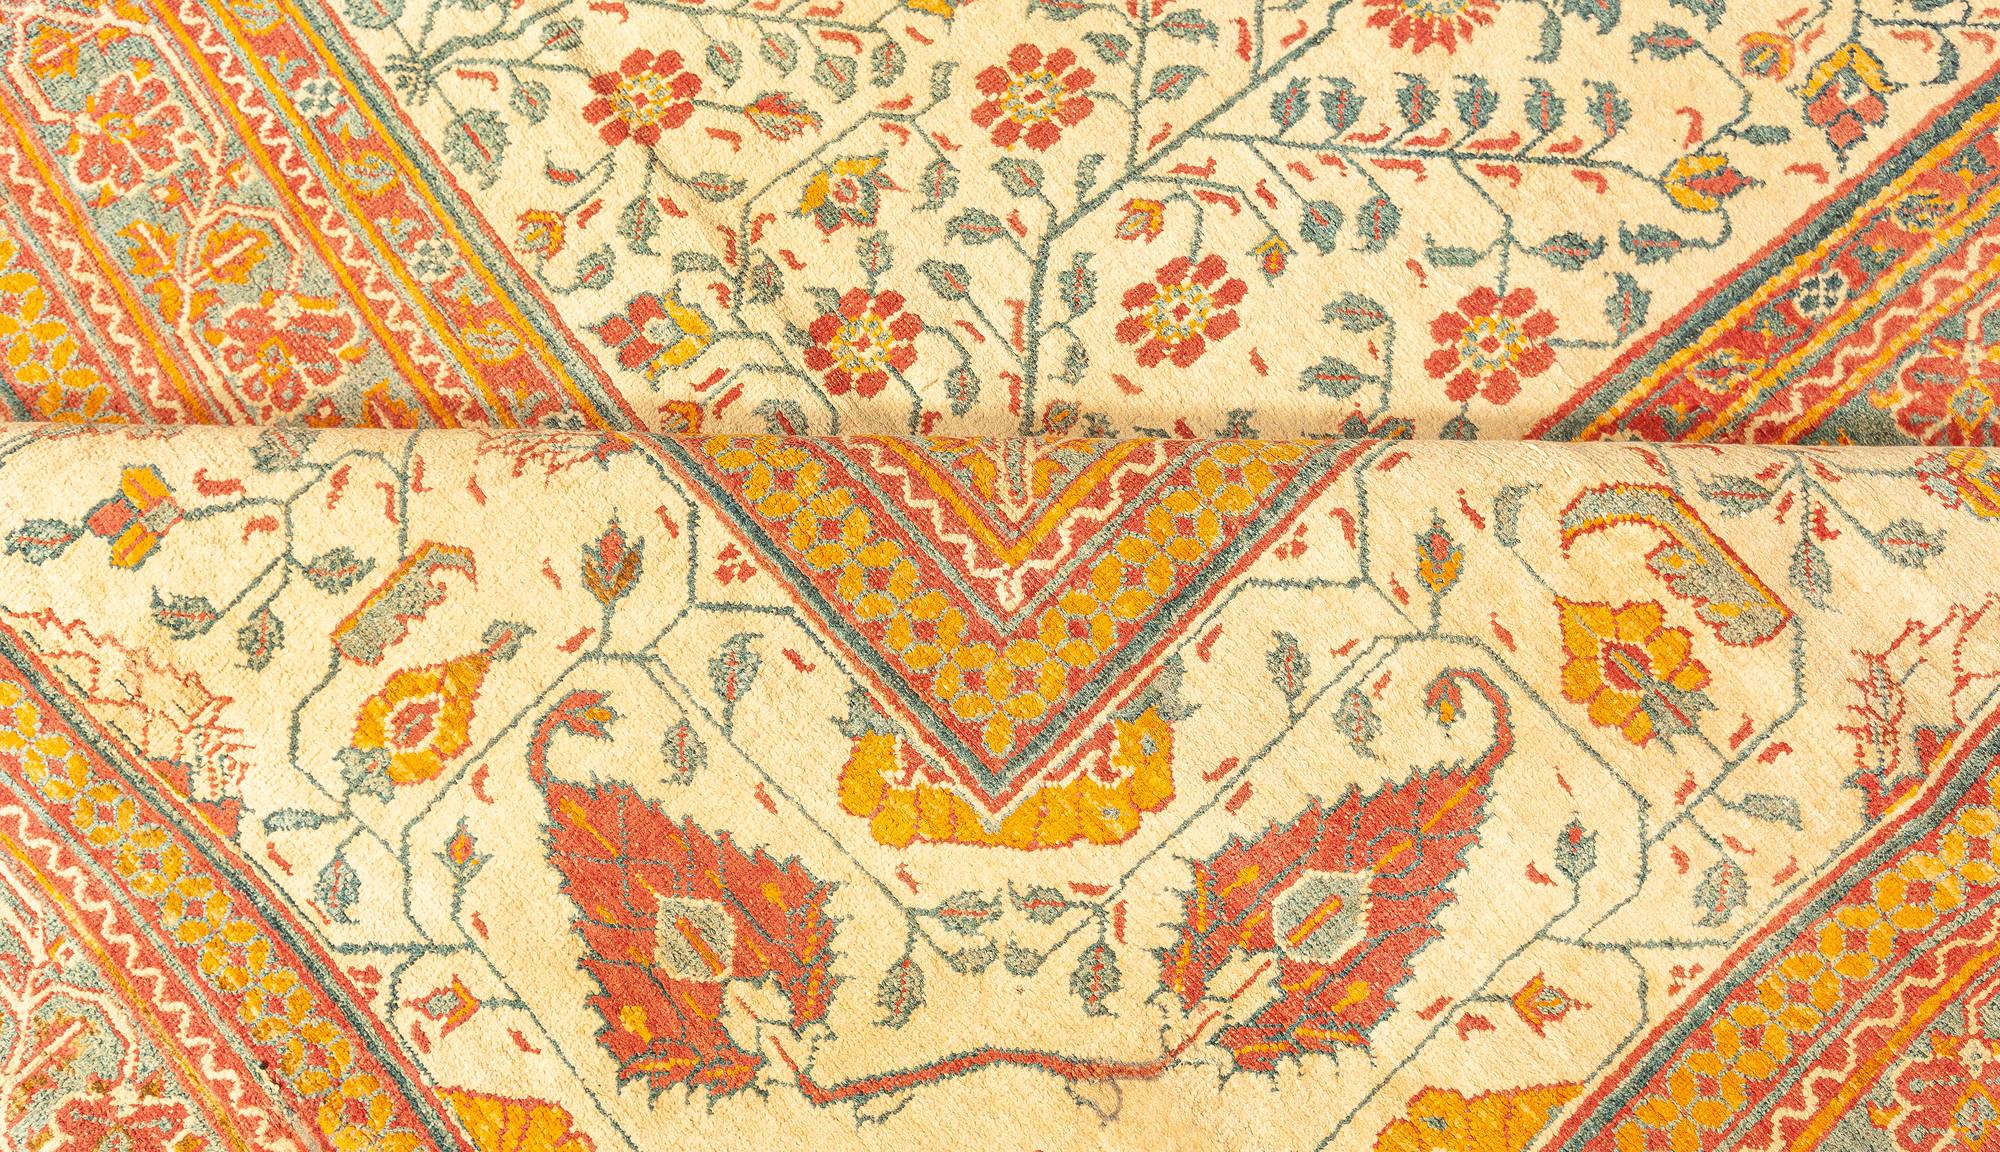 Extra large antique Indian Agra botanic handmade wool rug
Size: 15'0